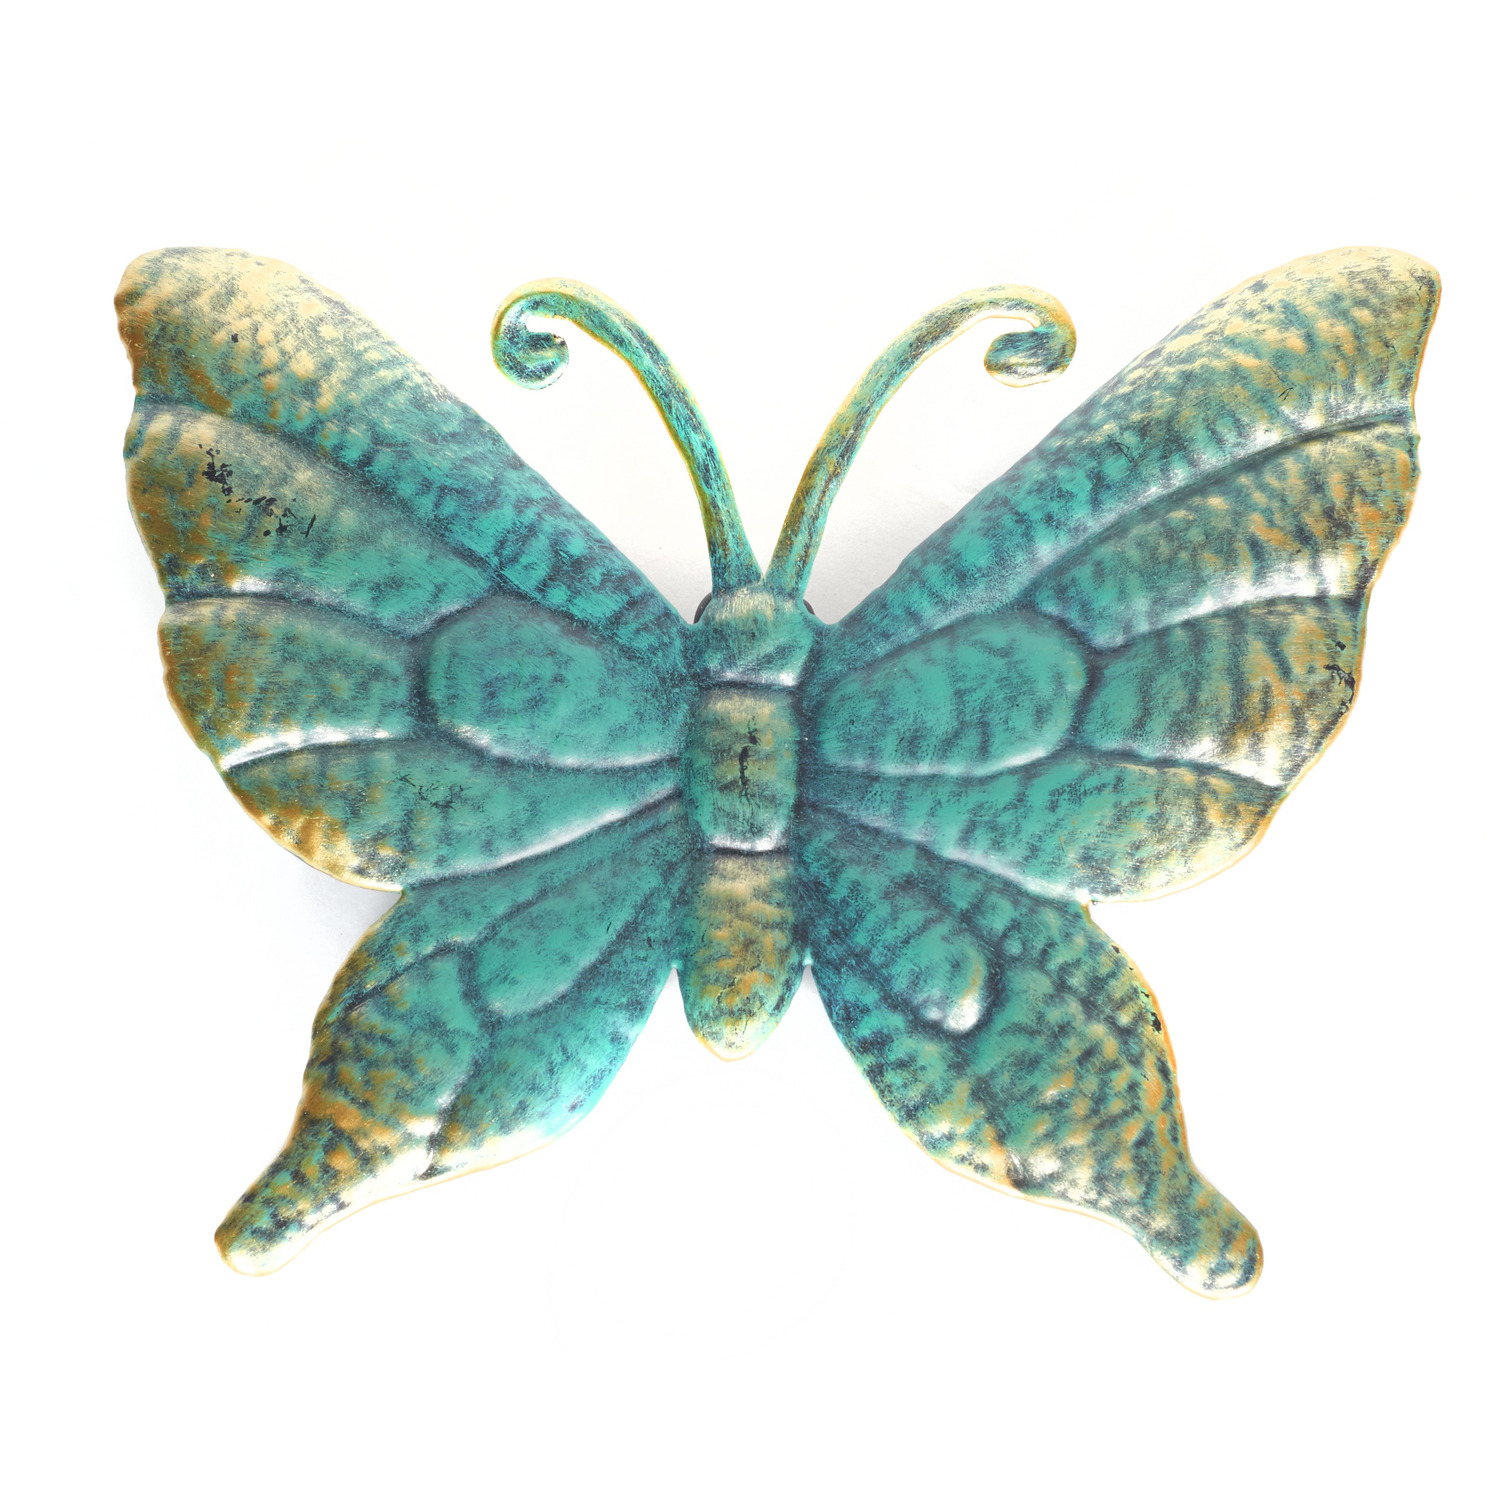 1x Schutting decoratie vlinders 22 cm turquoise-goud metaal